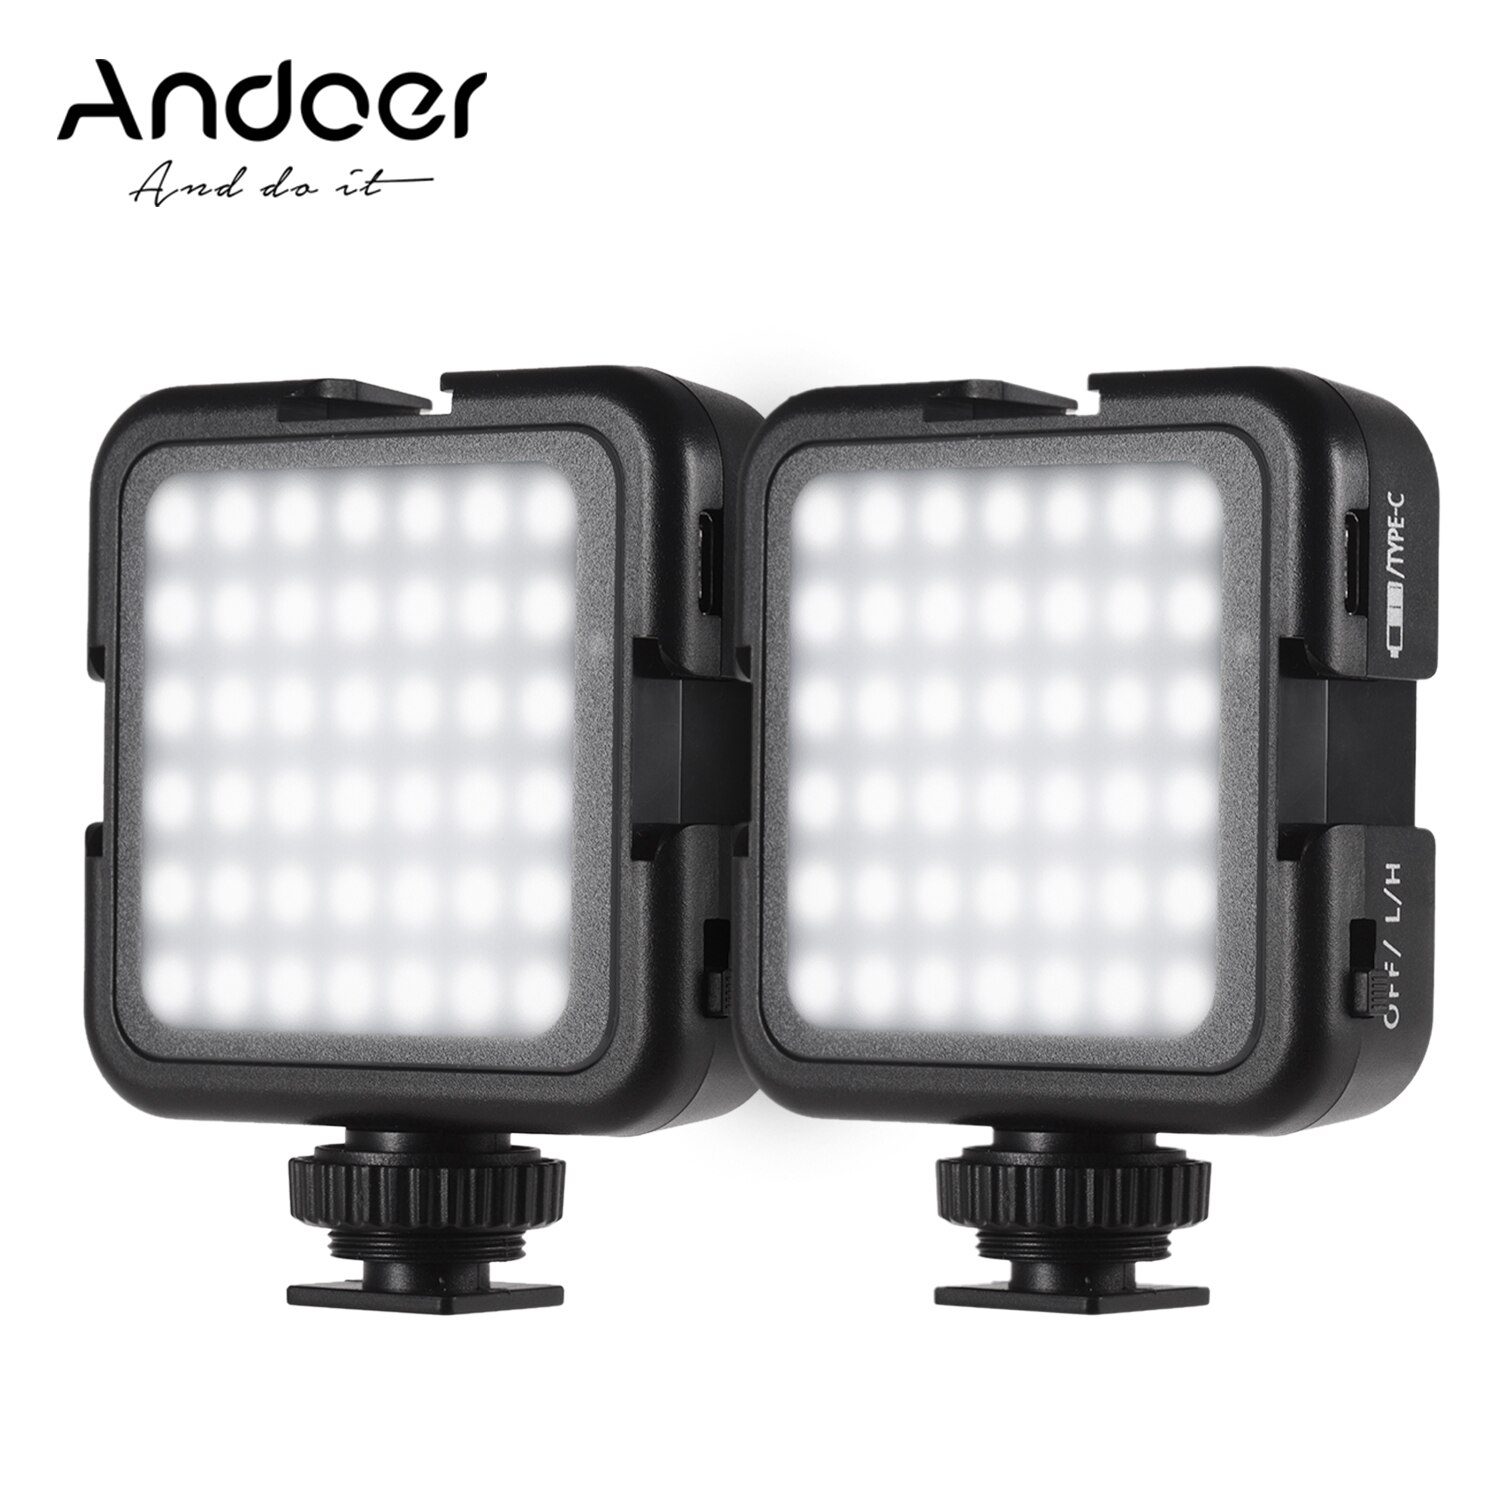 Andoer LED Video Verlichting Dimbare Helderheid 6000K Schieten Fotograferen Verlichting voor Canon Nikon Sony Digitale DSLR Camera 'S